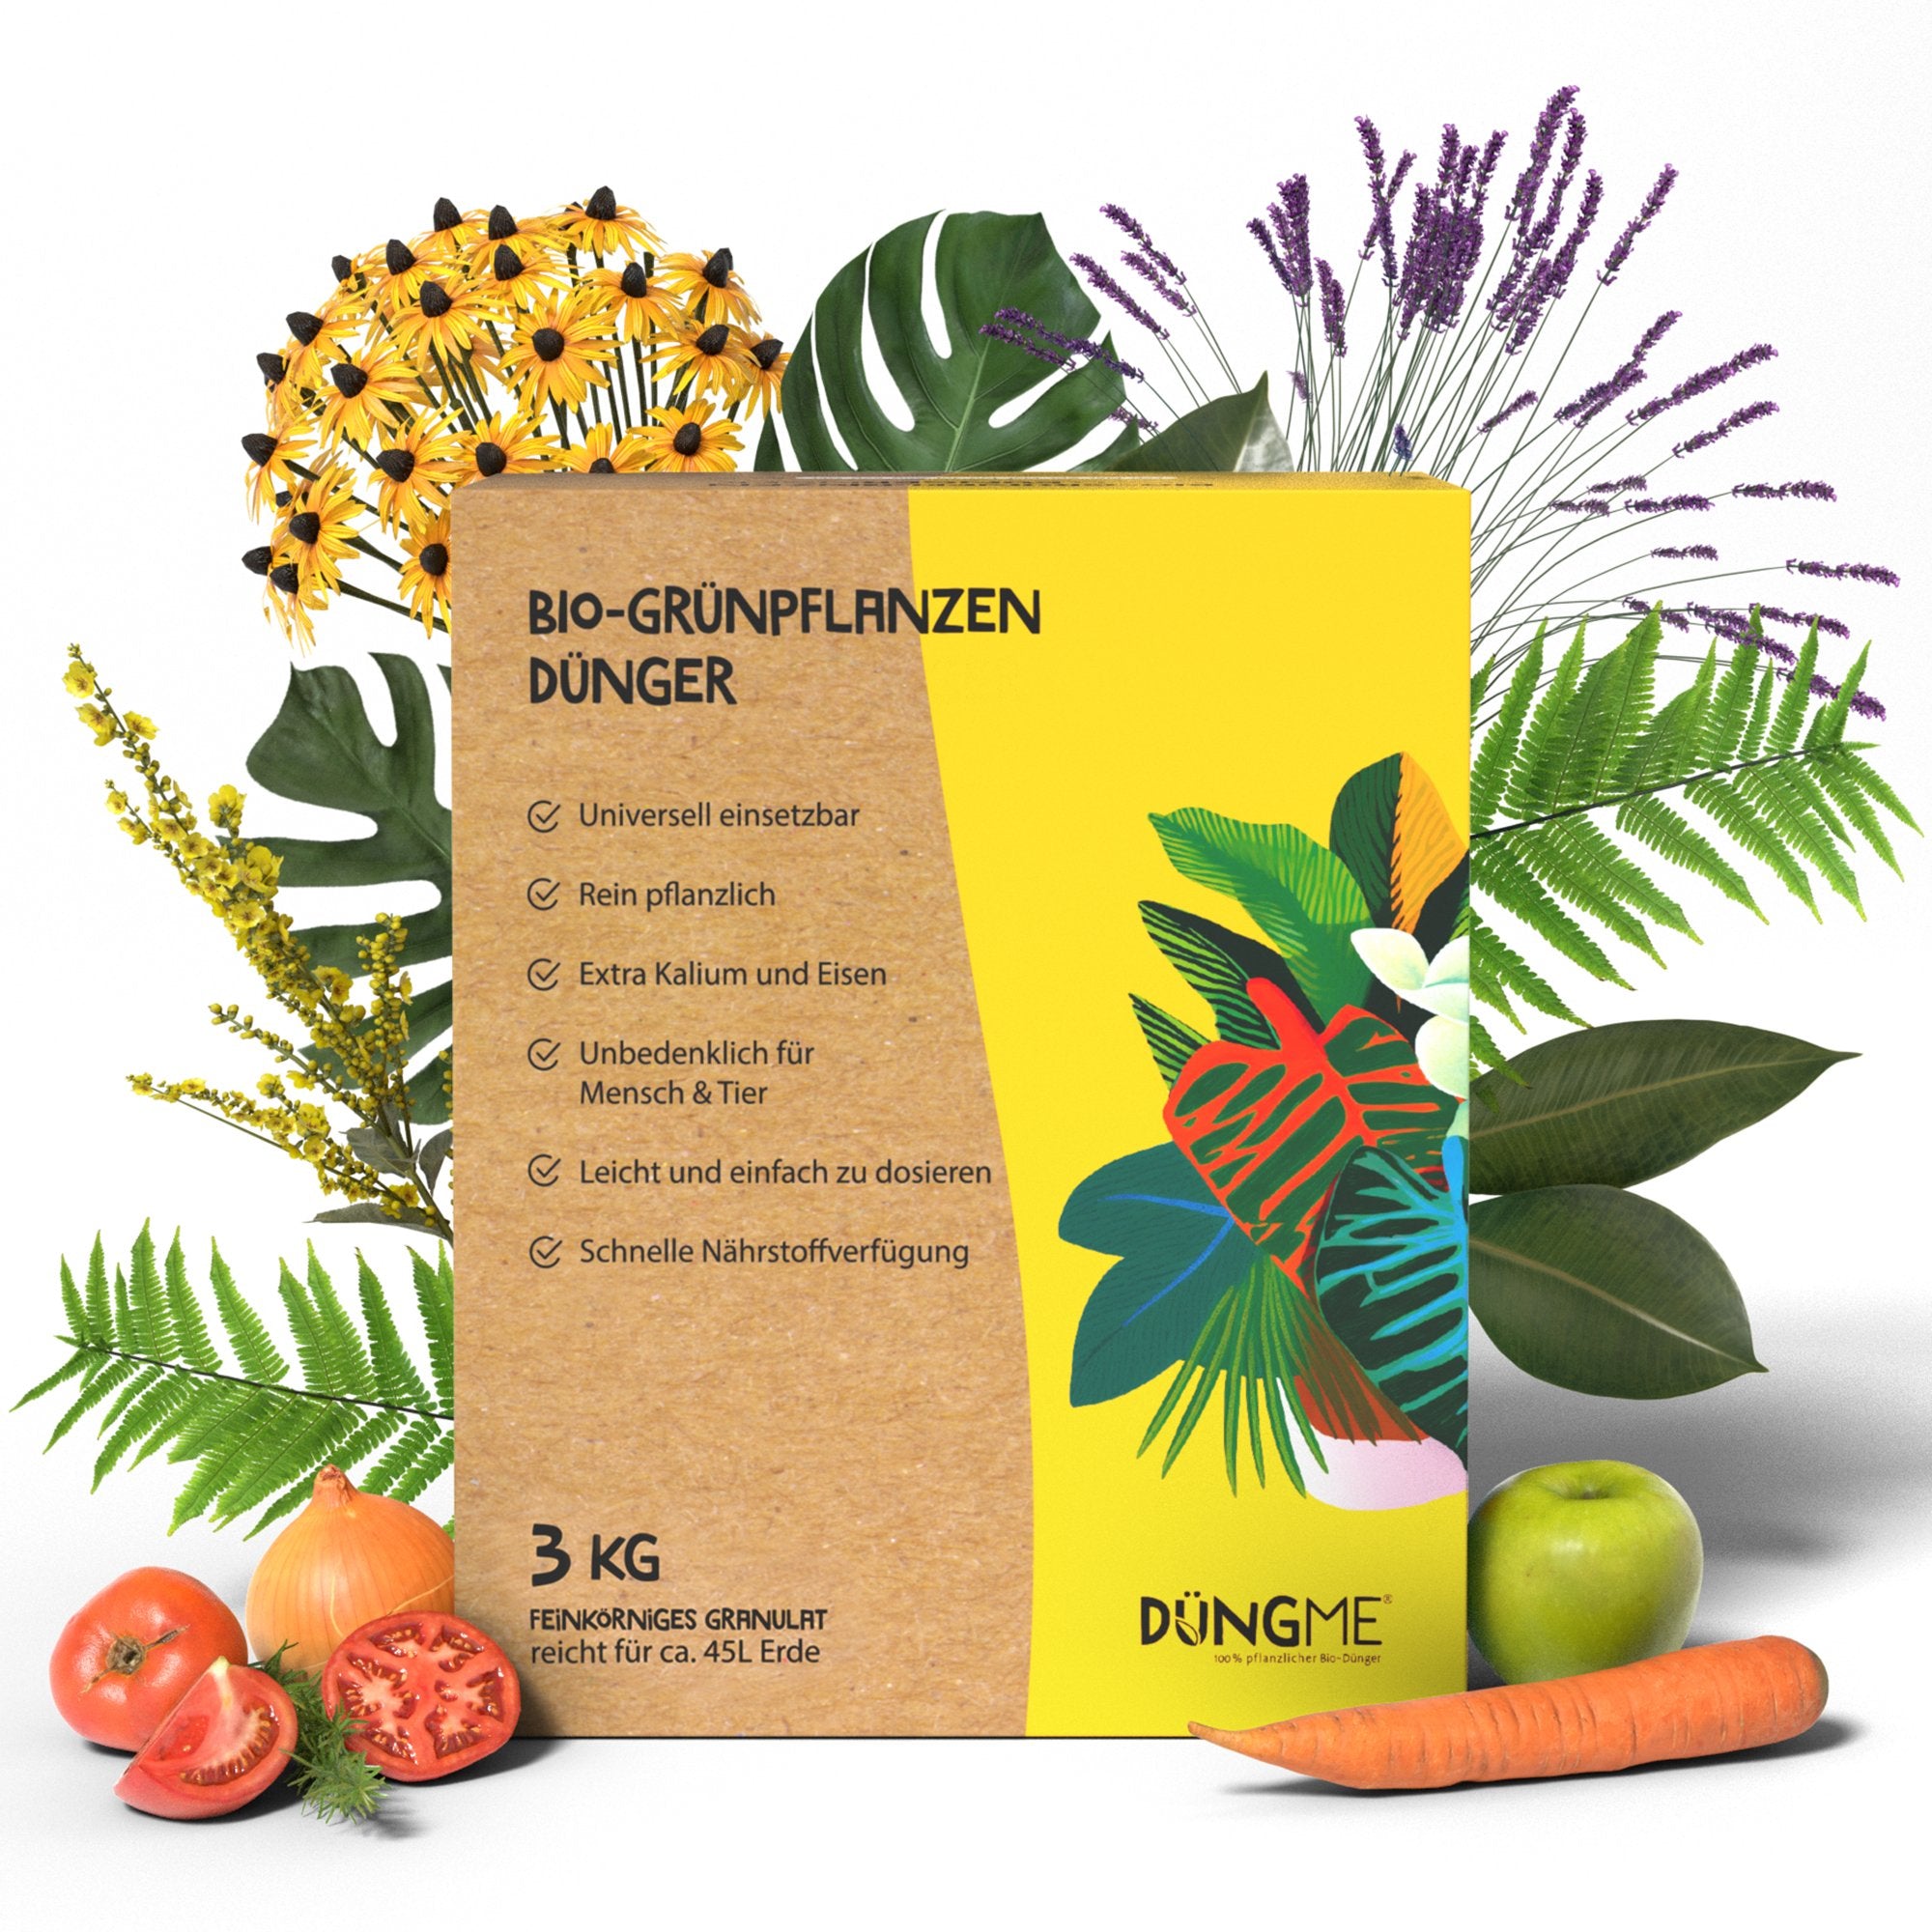 Bio-Grünpflanzendünger - 3 kg